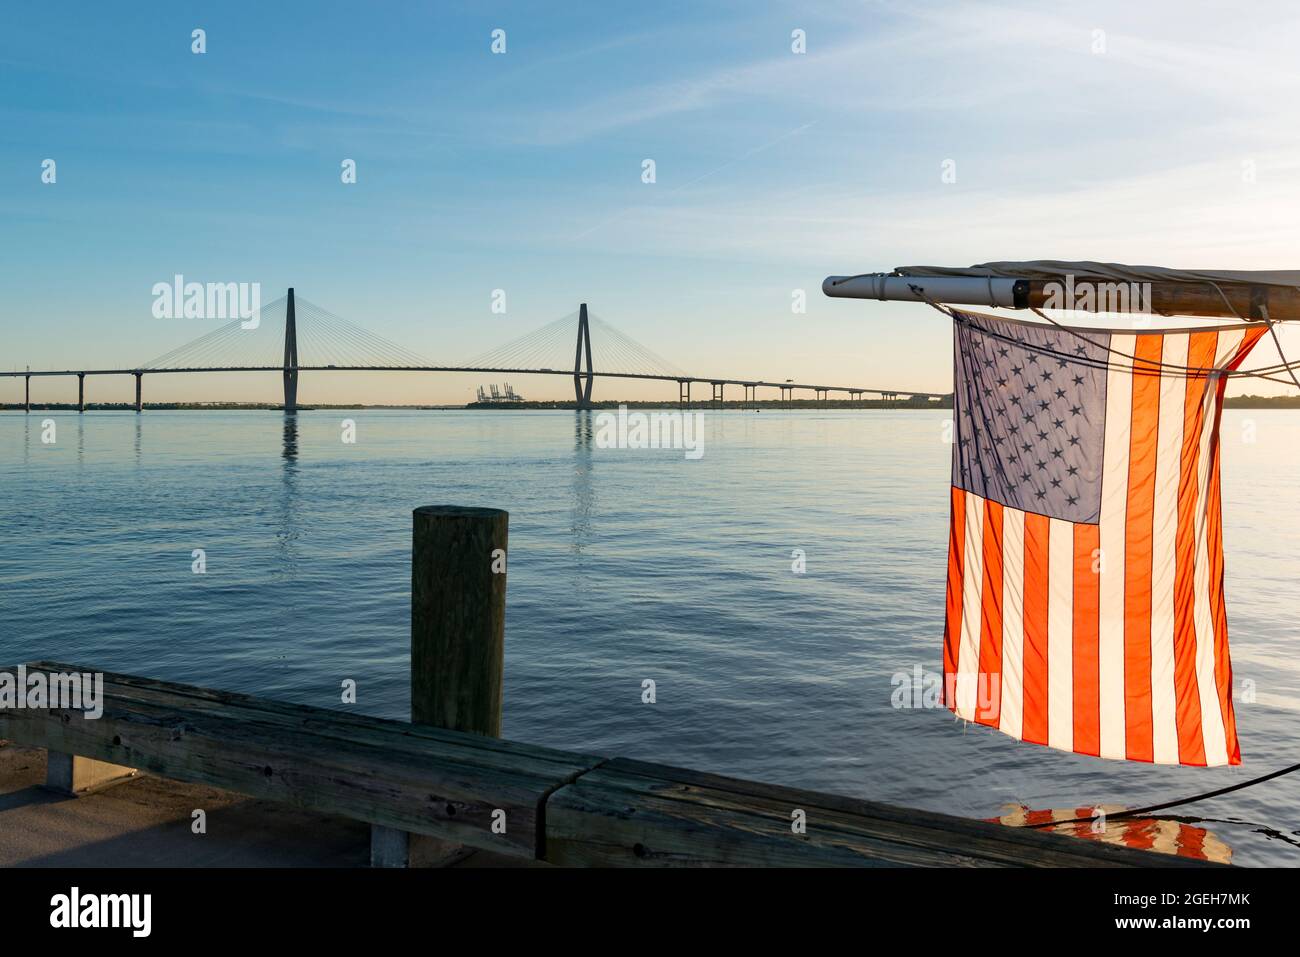 La bandera estadounidense colgando de la barriada de un barco en el río Cooper frente al puente Arthur Ravenel Jnr en Charleston, Carolina del Sur, Estados Unidos Foto de stock